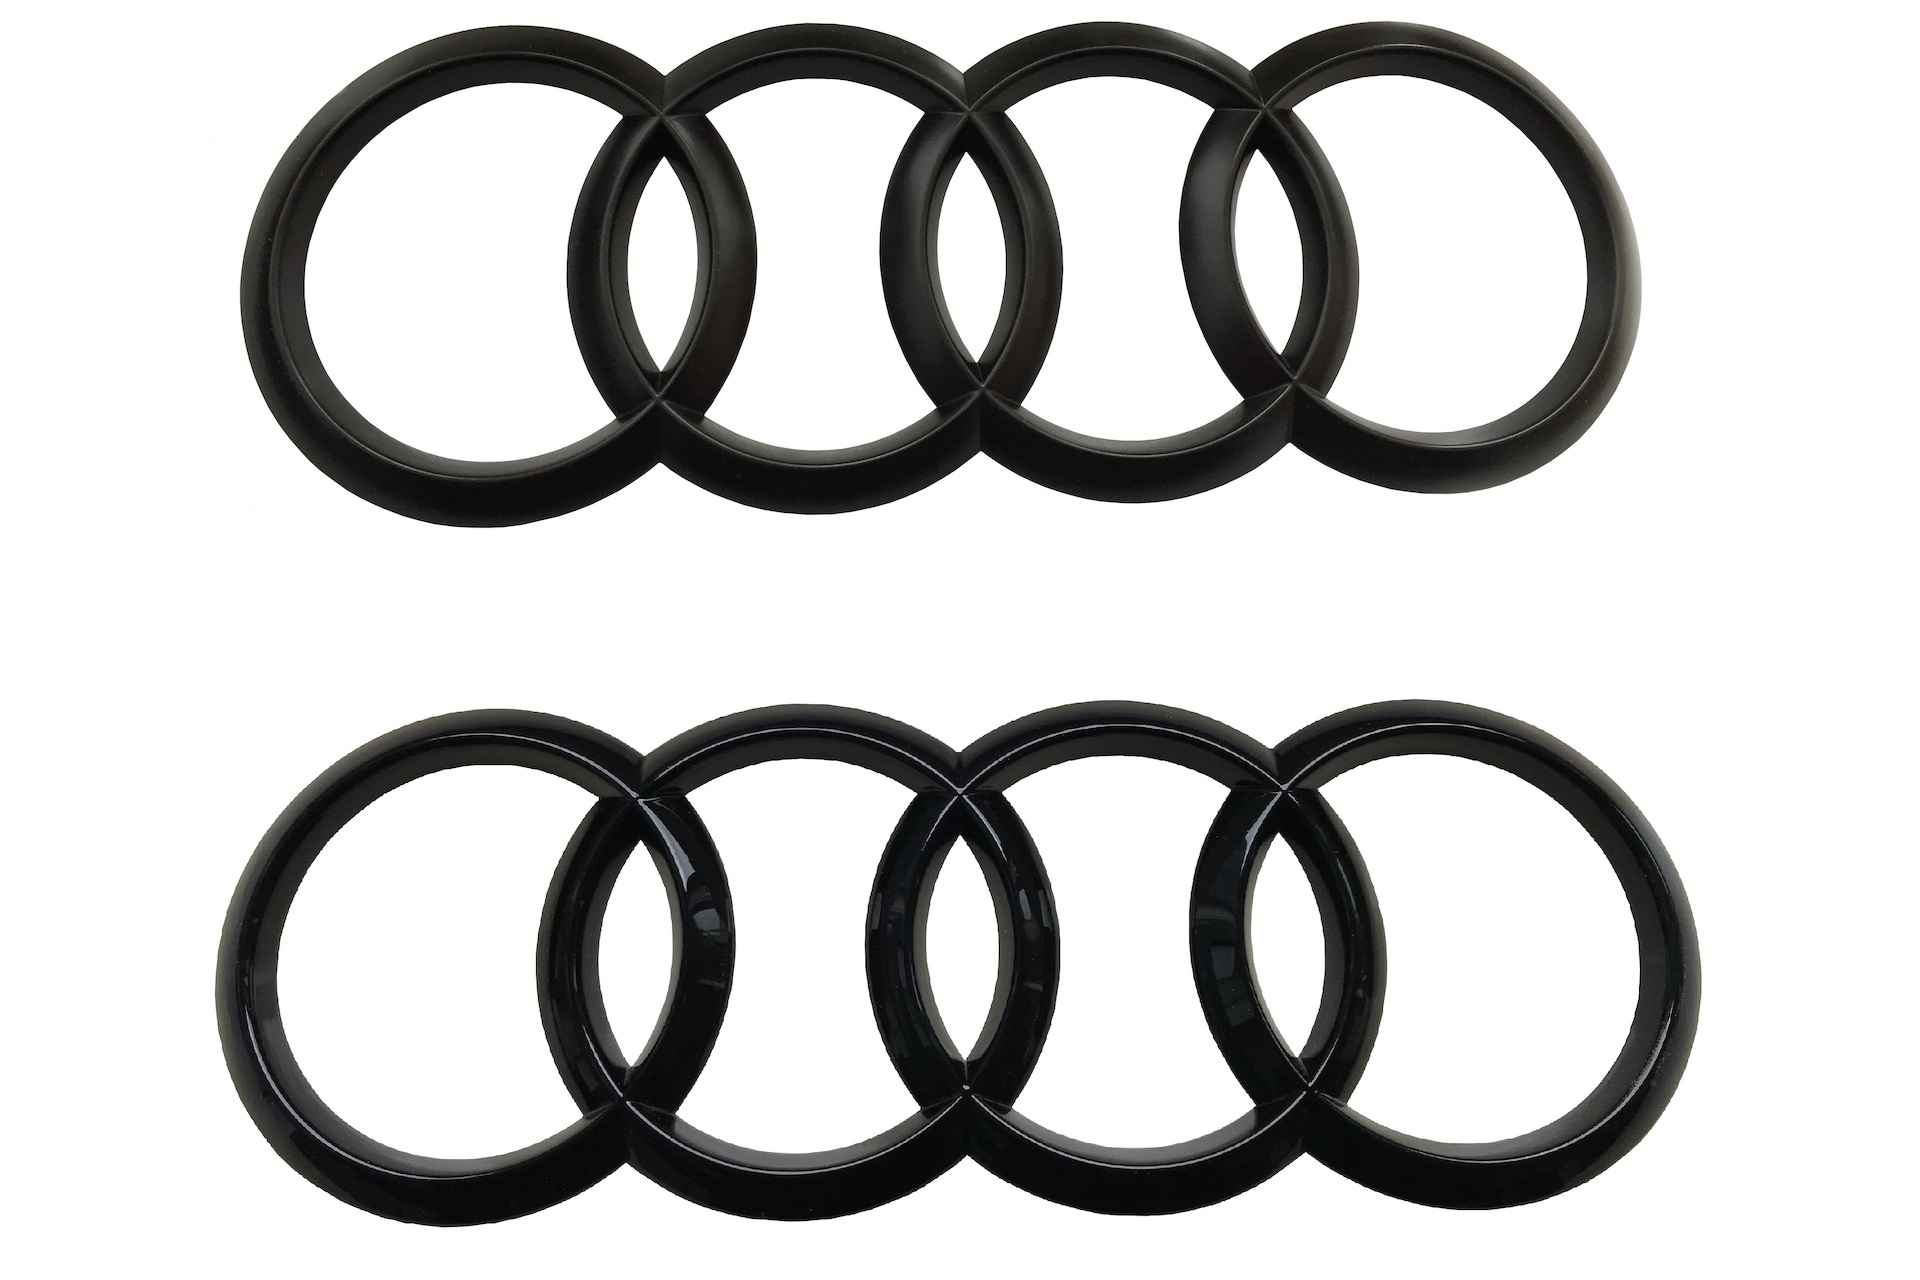 AUDI Ringe - schwarz / glänzend - A4 (B7) - vorne ☀️ ab 68,90 €